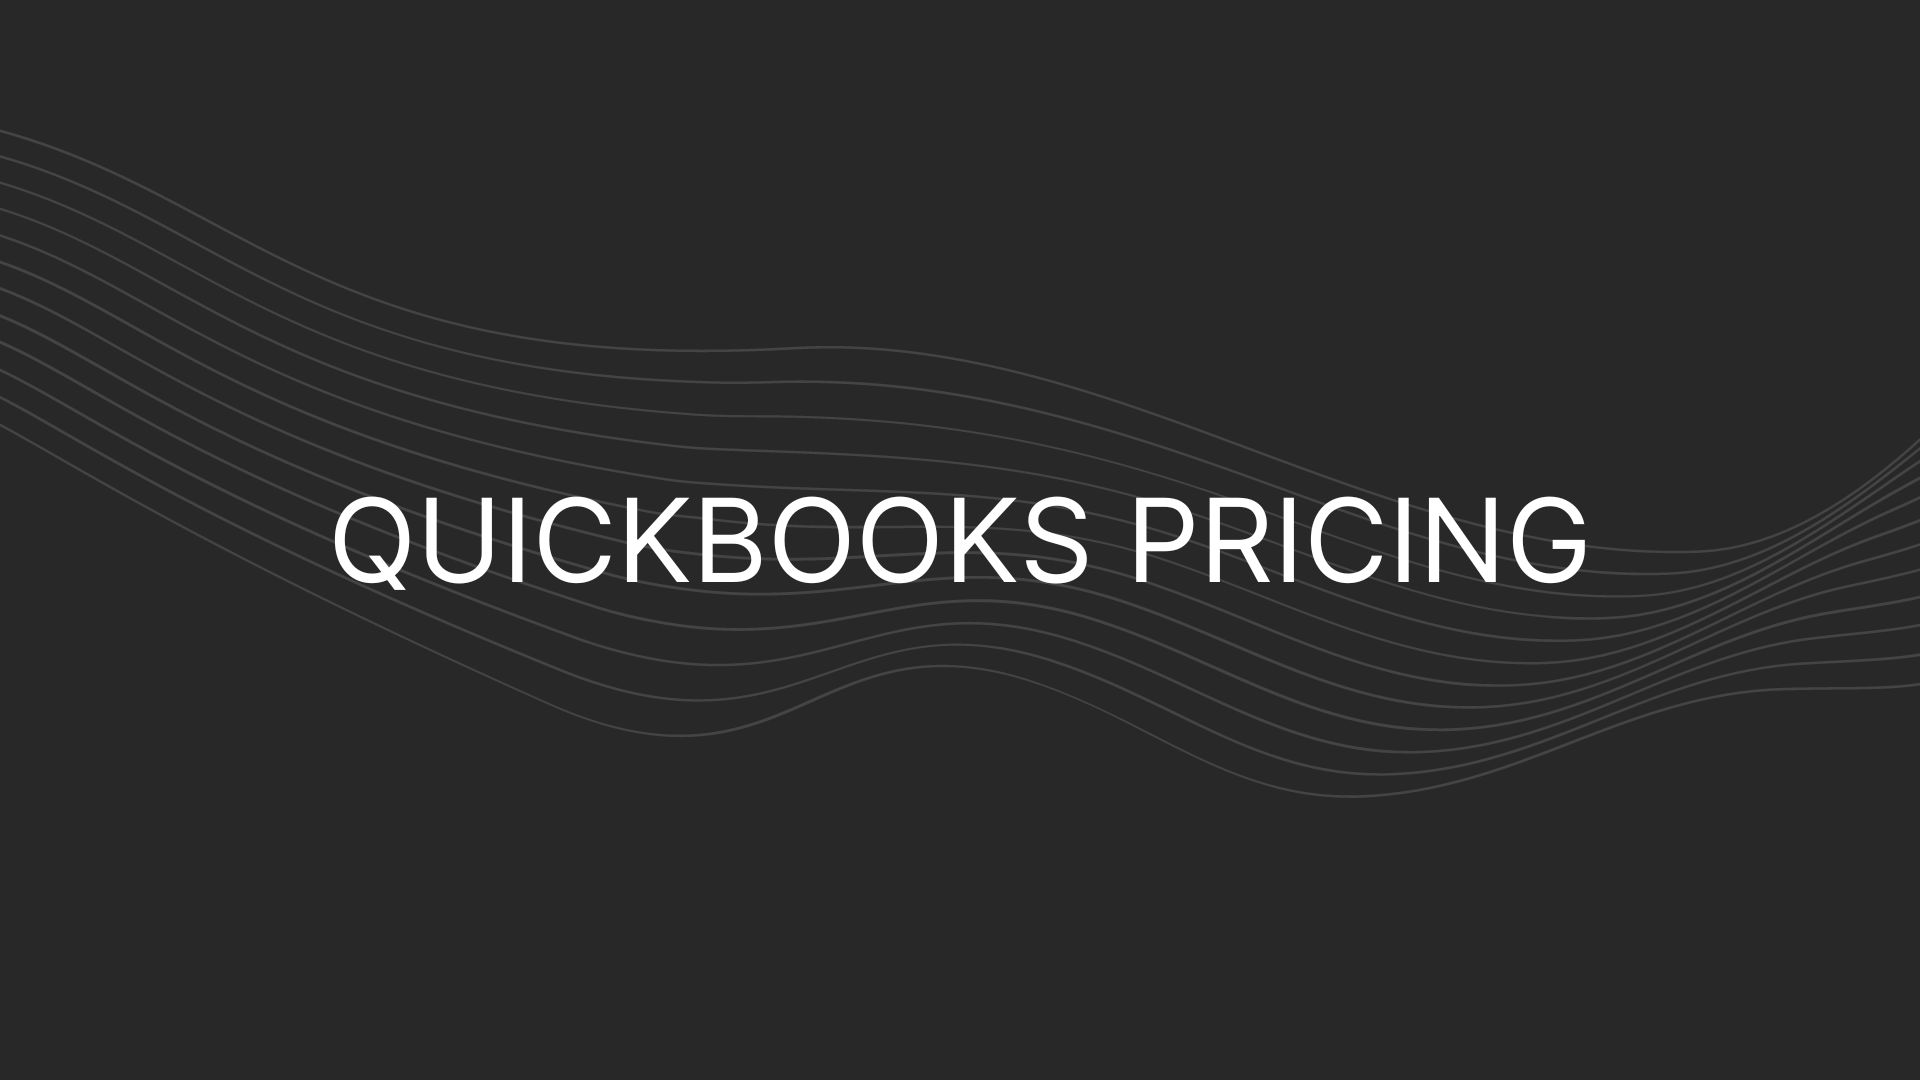 QuickBooks pricing